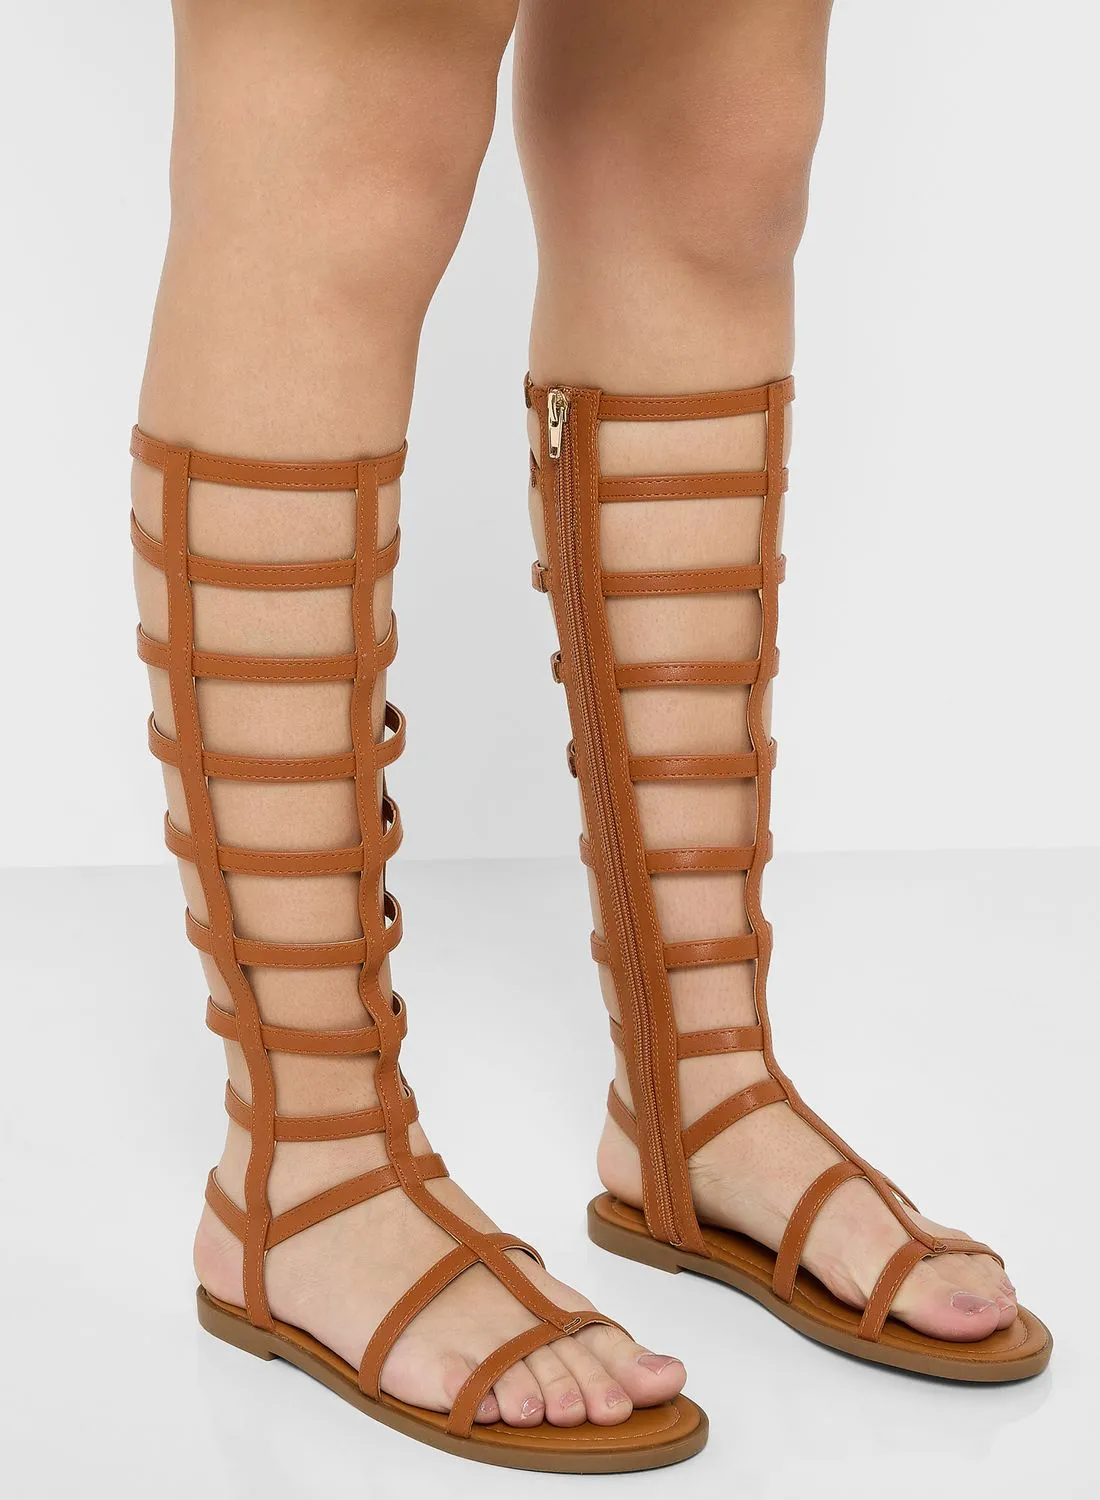 NEW LOOK Gladdis Flat Sandals